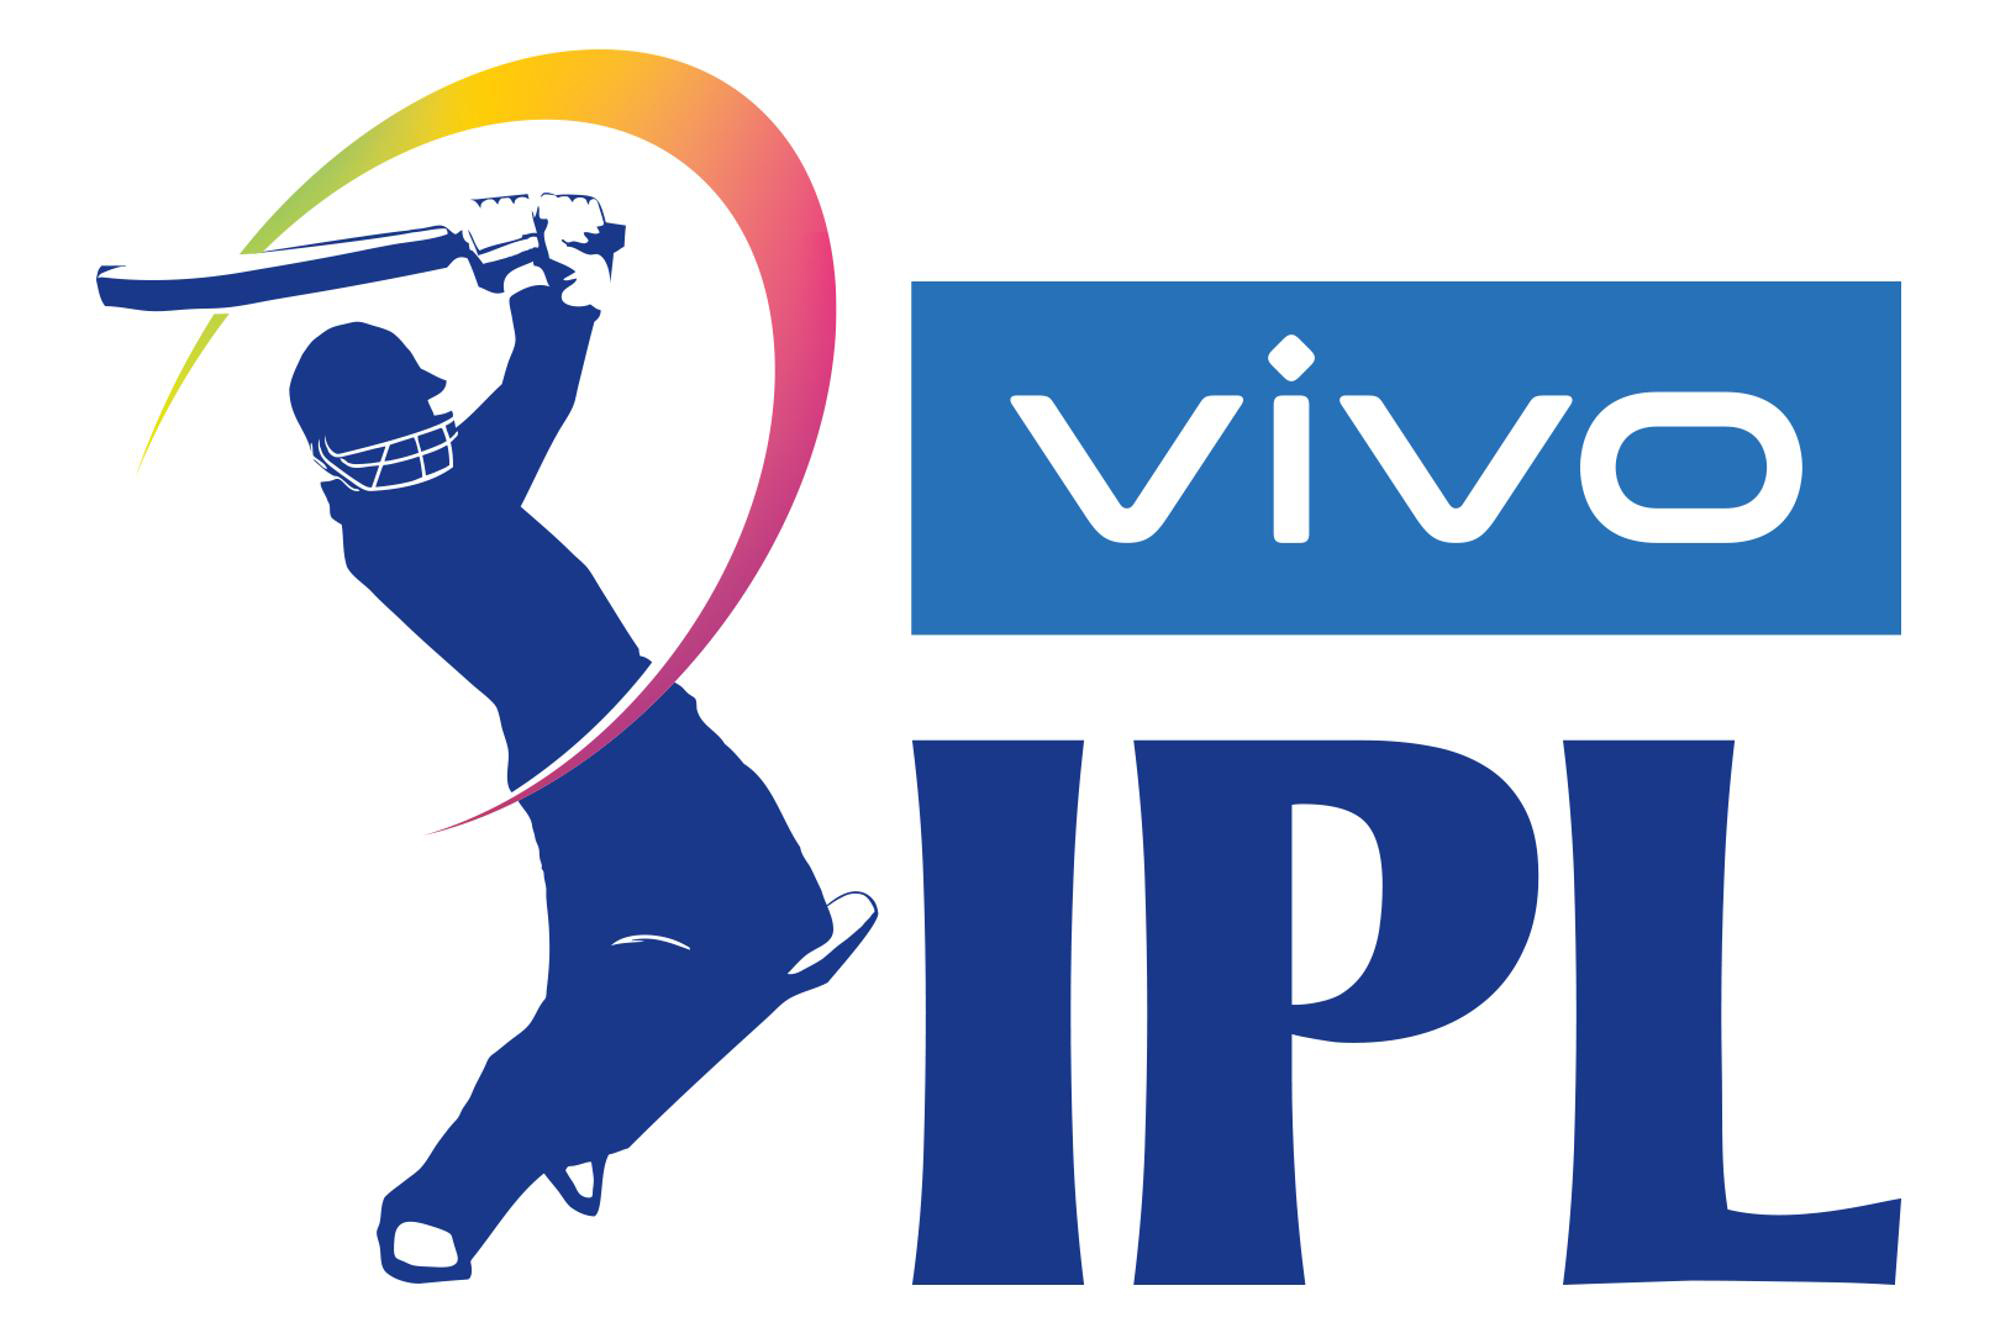 VIVO RETURNS AS THE TITLE SPONSOR FOR IPL 2021